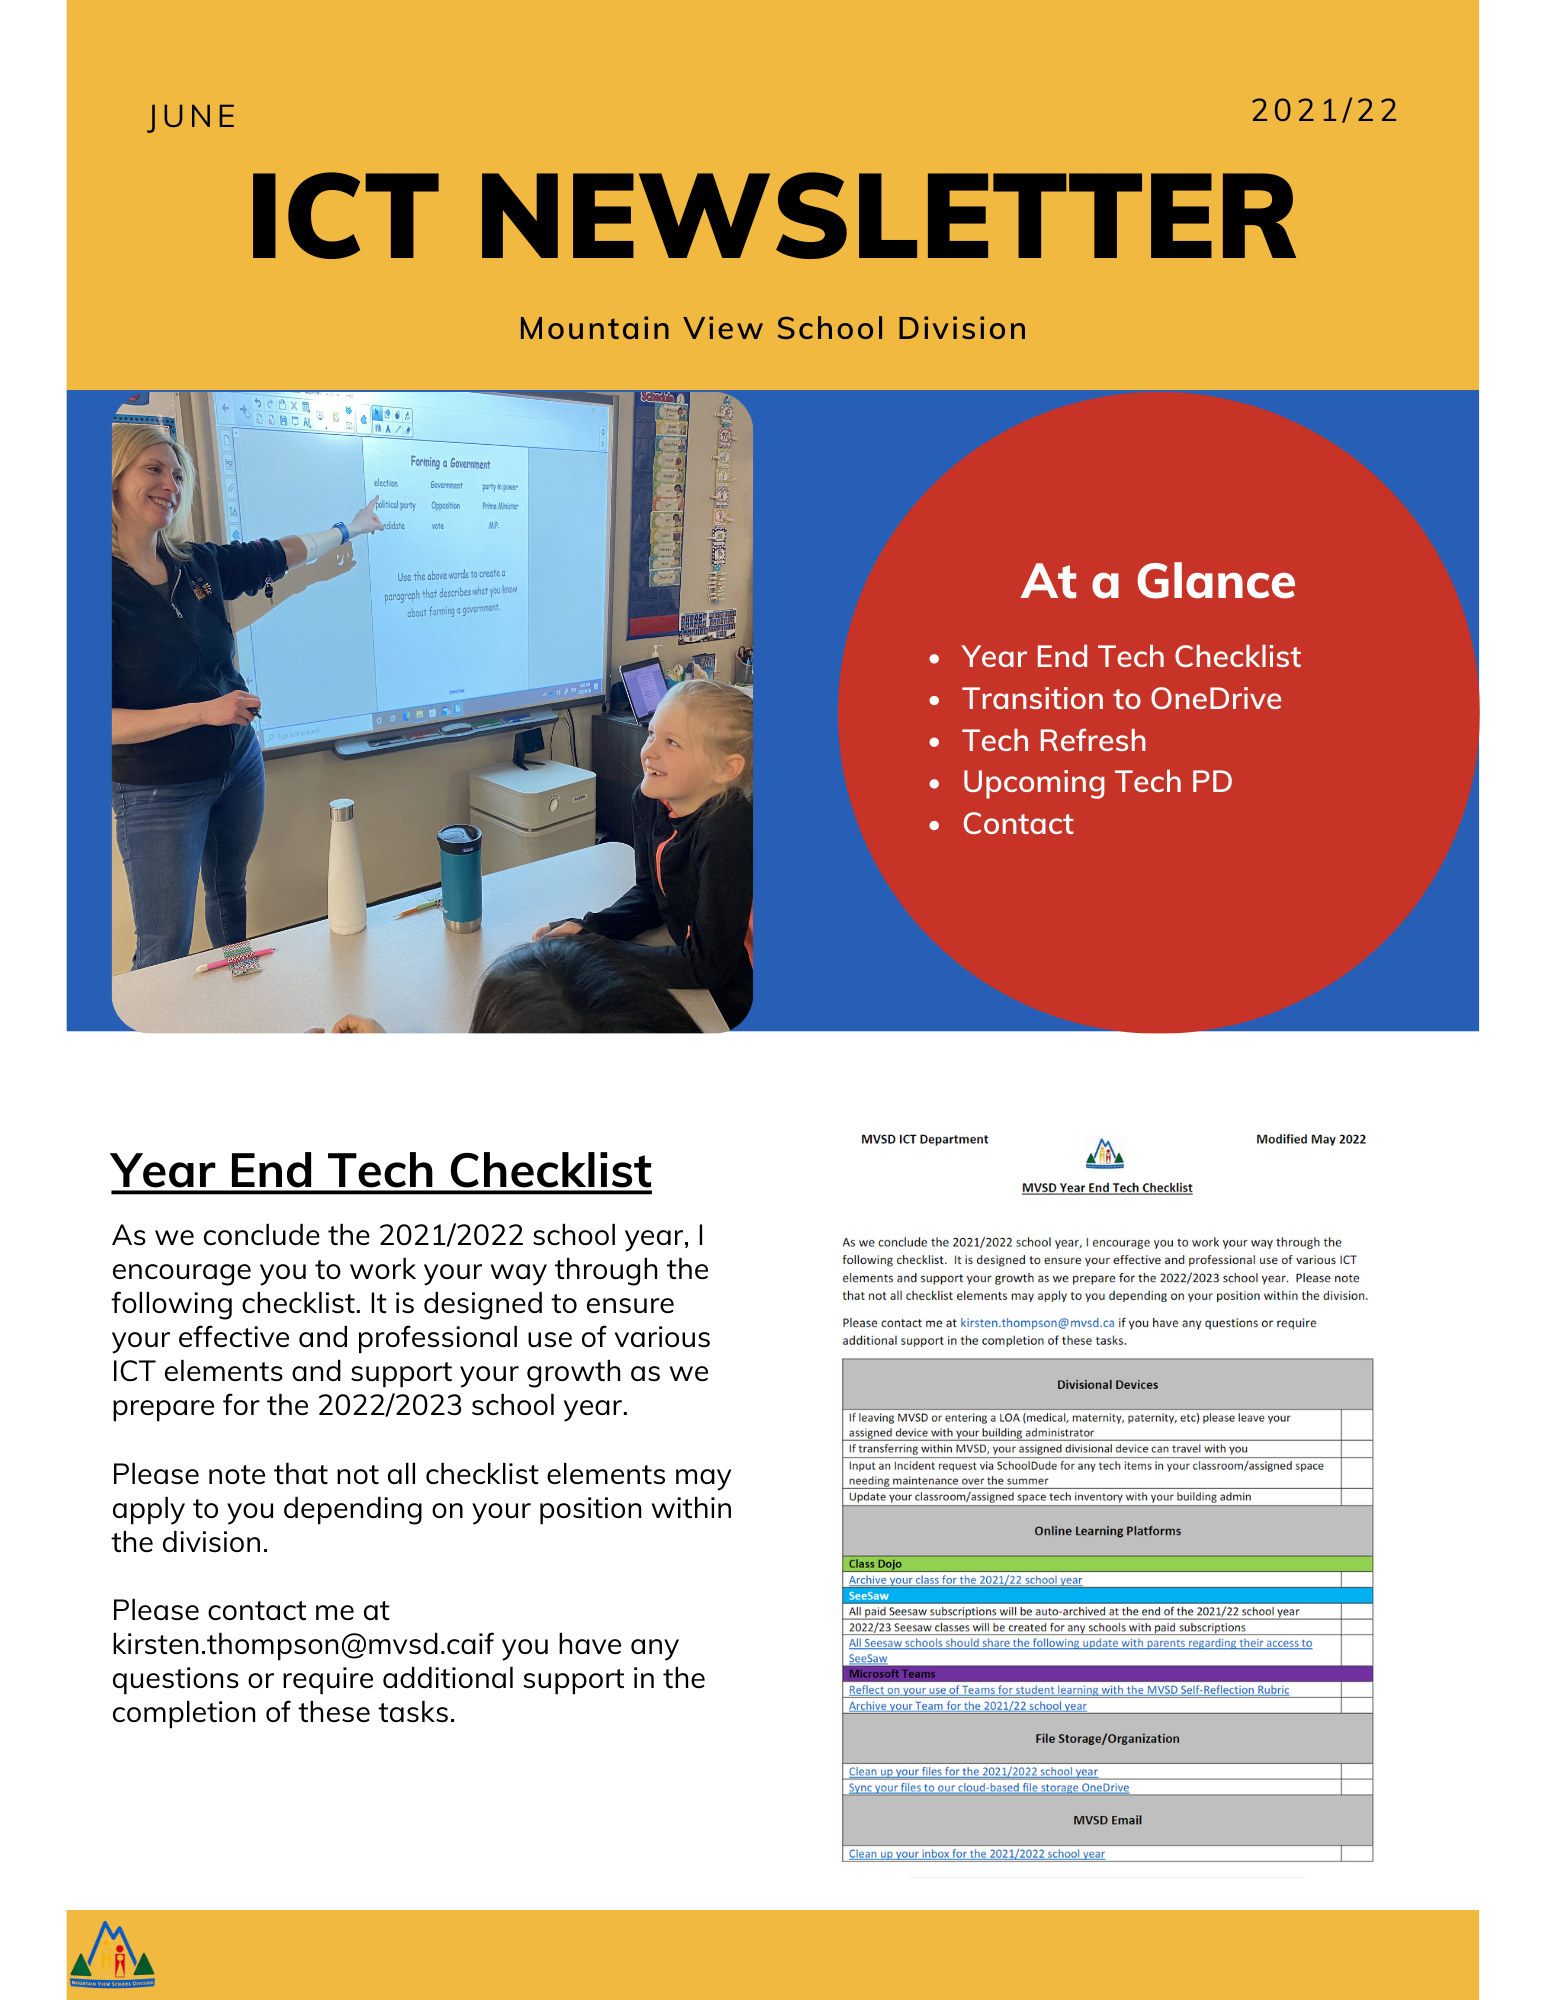 June ICT Newsletter